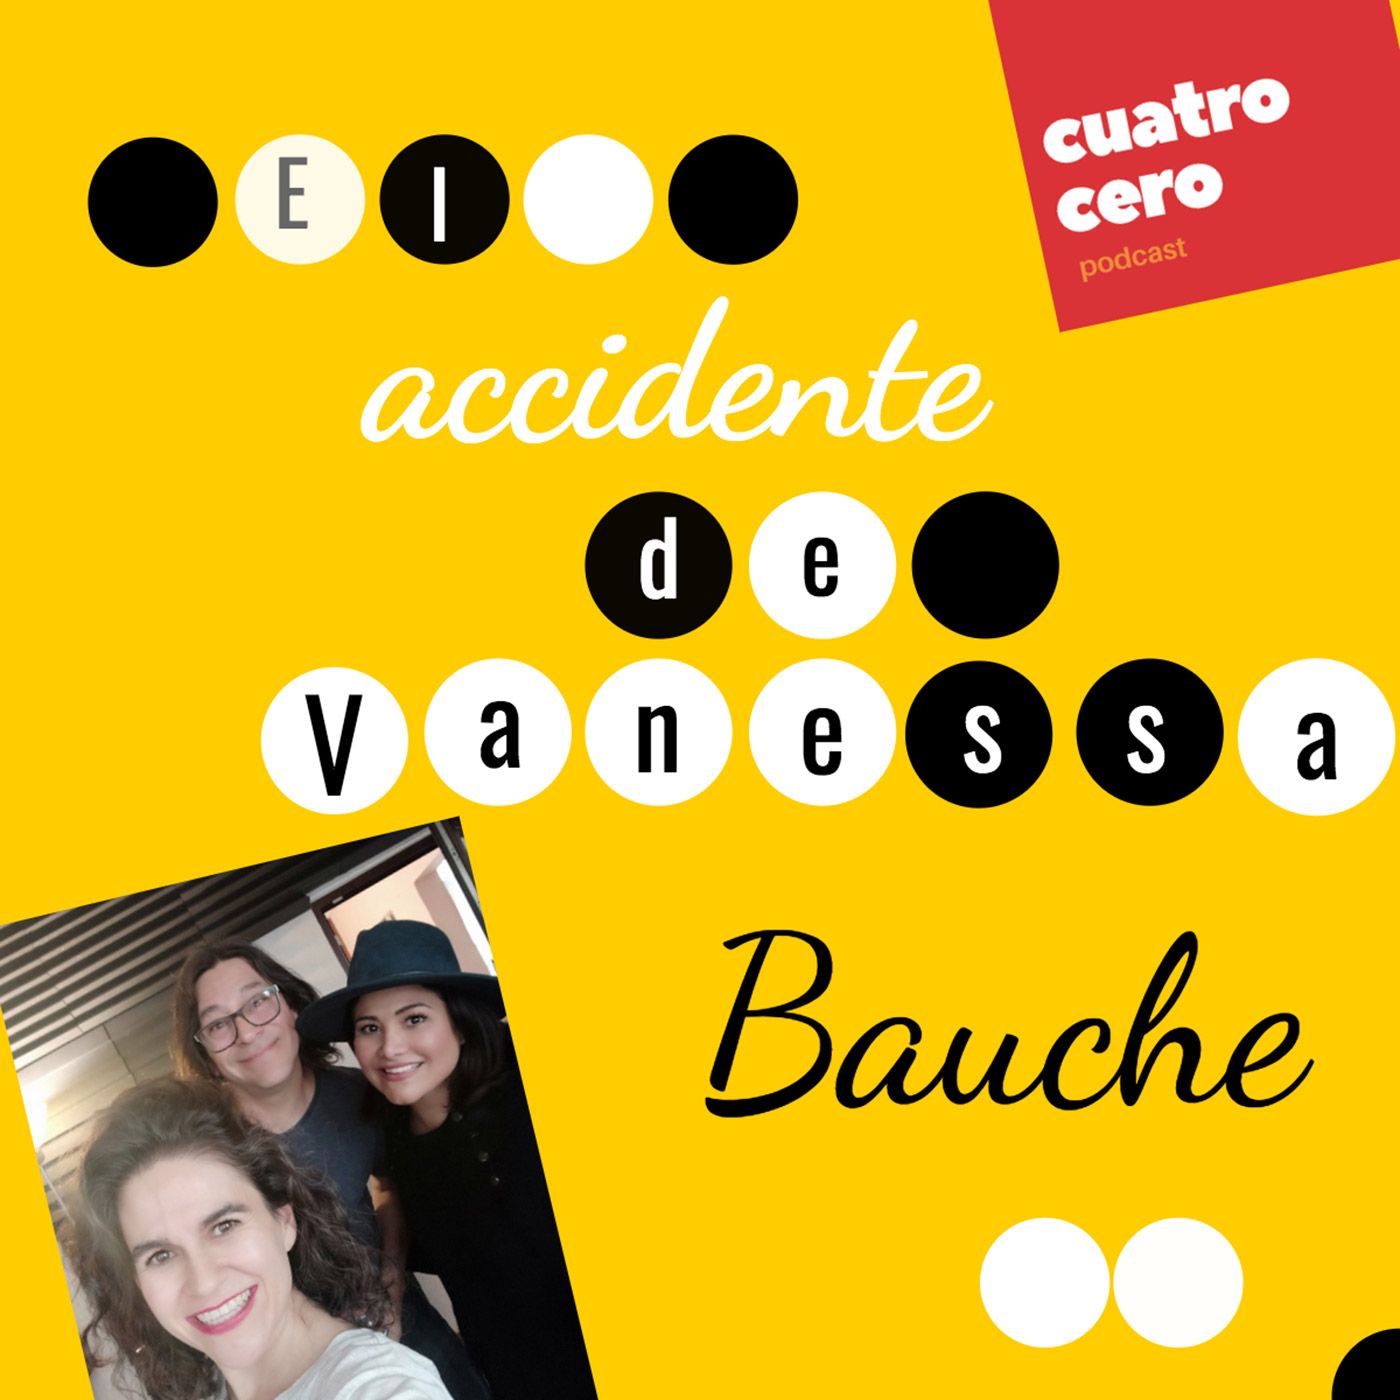 Cuatro Cero: El Accidente, de Vanessa Bauche